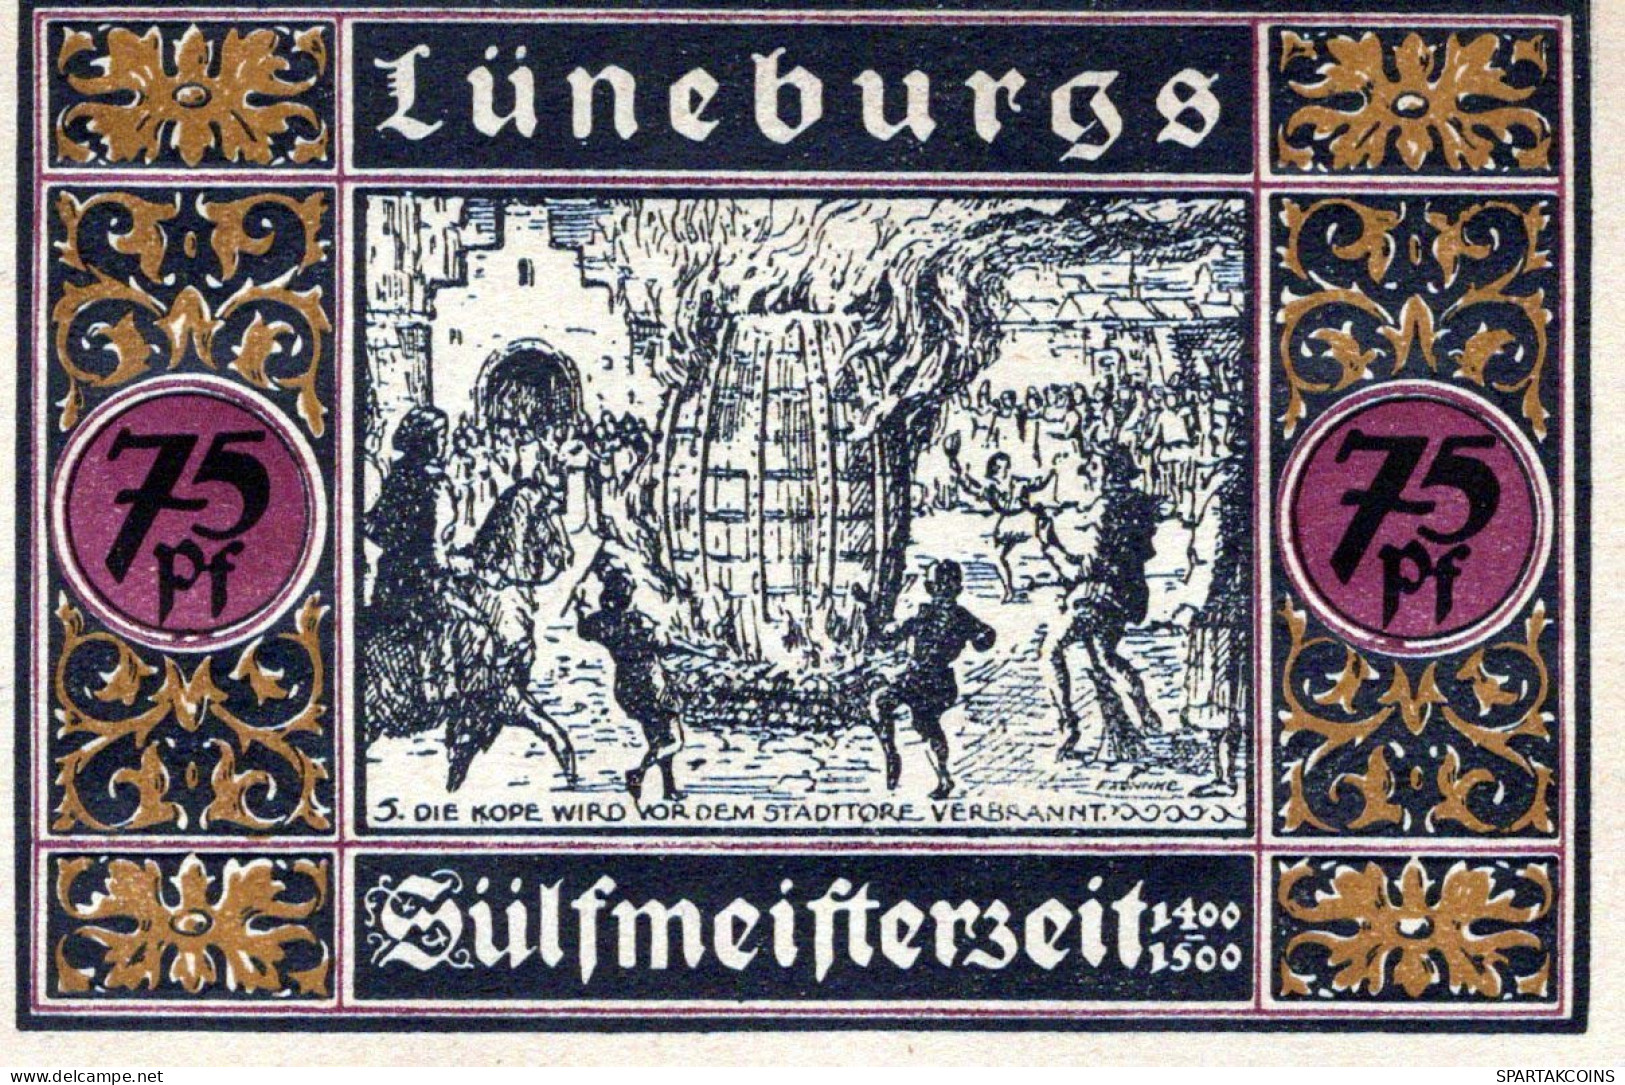 75 PFENNIG 1921 Stadt LÜNEBURG Hanover UNC DEUTSCHLAND Notgeld Banknote #PC642 - Lokale Ausgaben